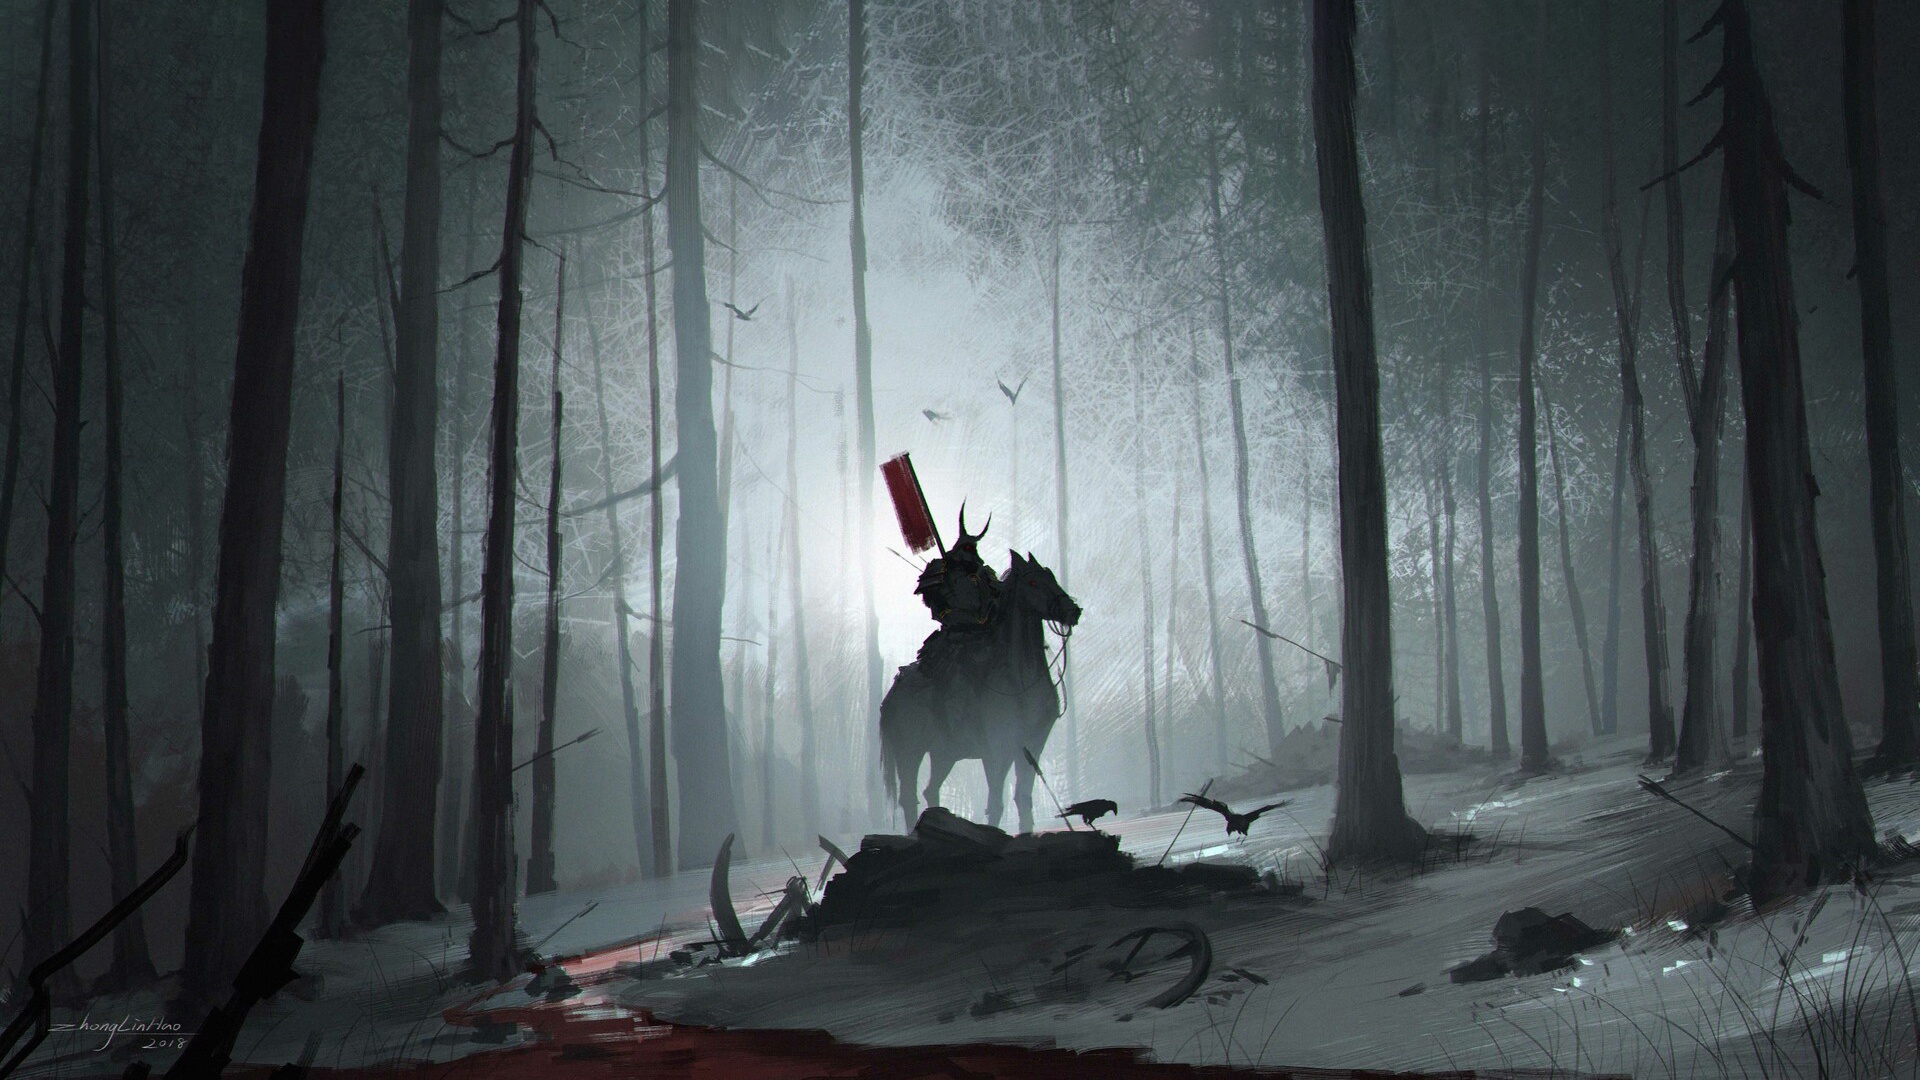 General 1920x1080 samurai horse men dark warrior artwork blood trees crow forest